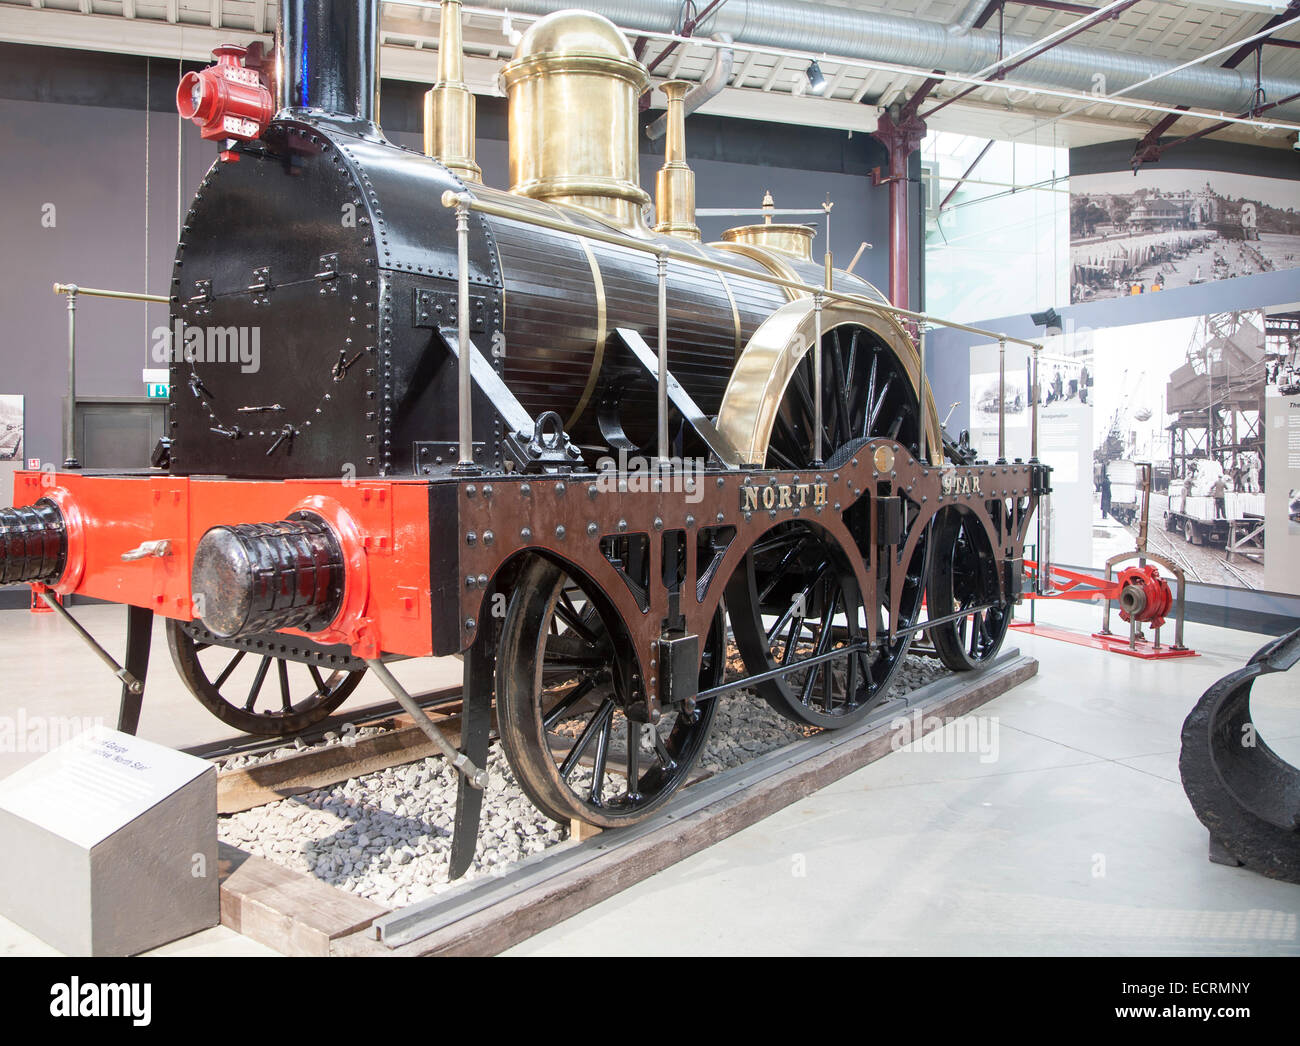 GWR il museo dei treni a vapore Swindon, Inghilterra, Regno Unito replica della North Star motore Foto Stock